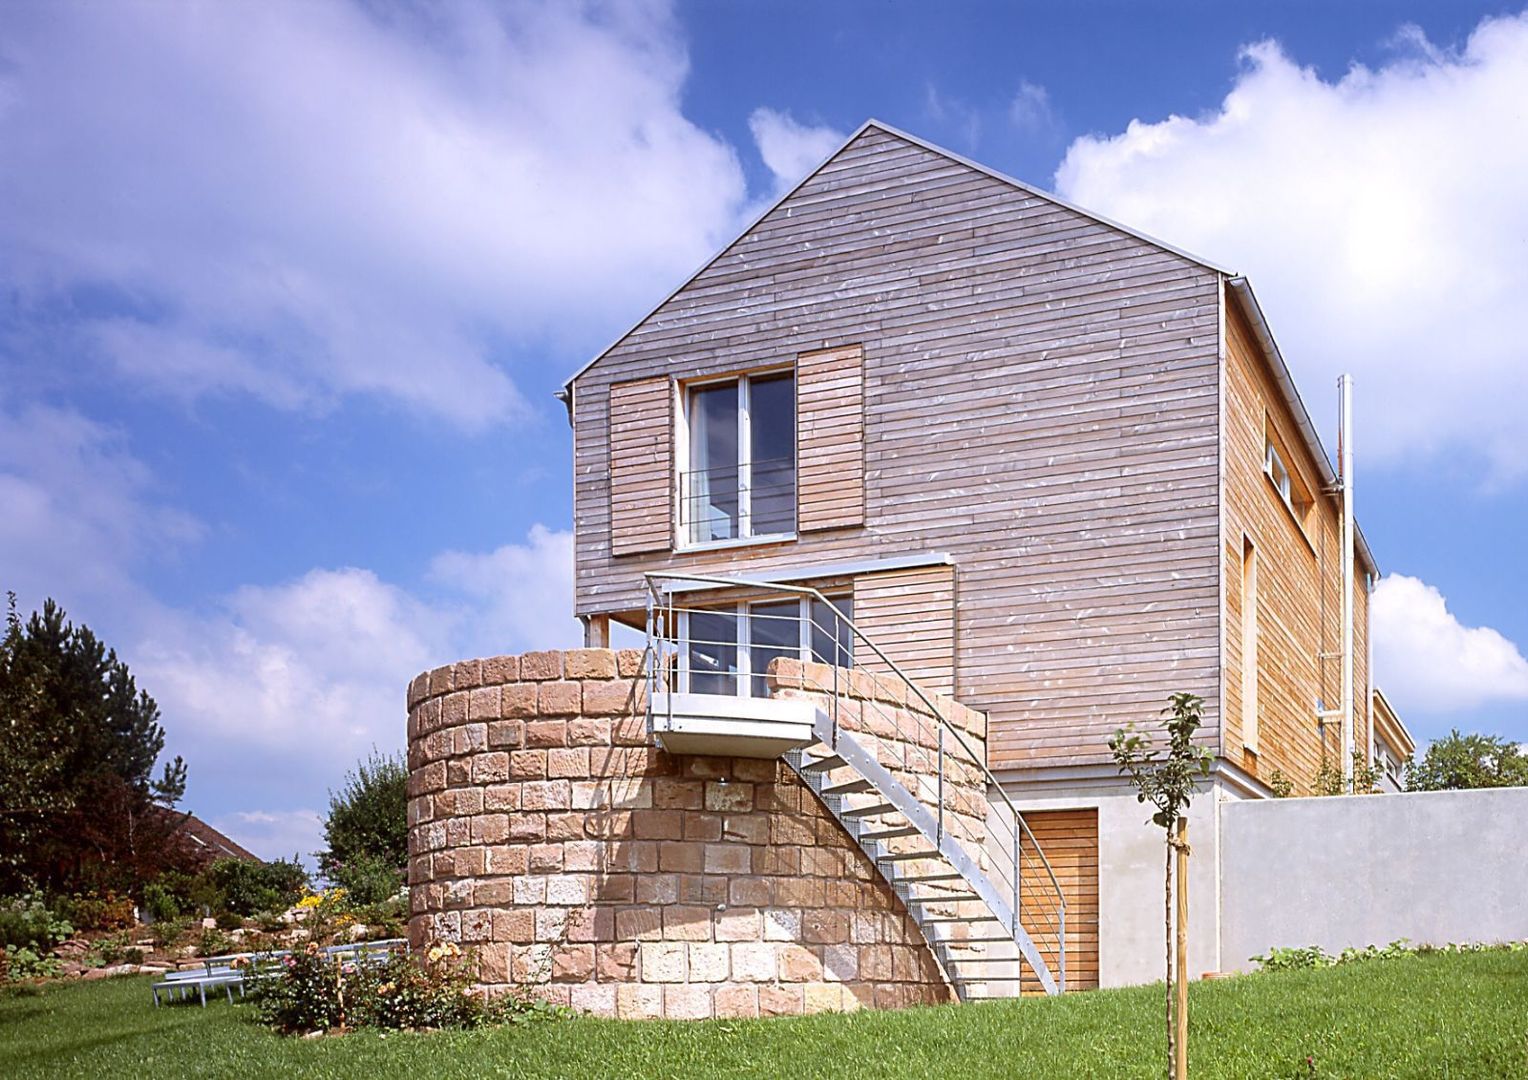 Einfamilien Wohnhaus in Holzständerkonstruktion, Jarcke Architekten Jarcke Architekten Casas modernas